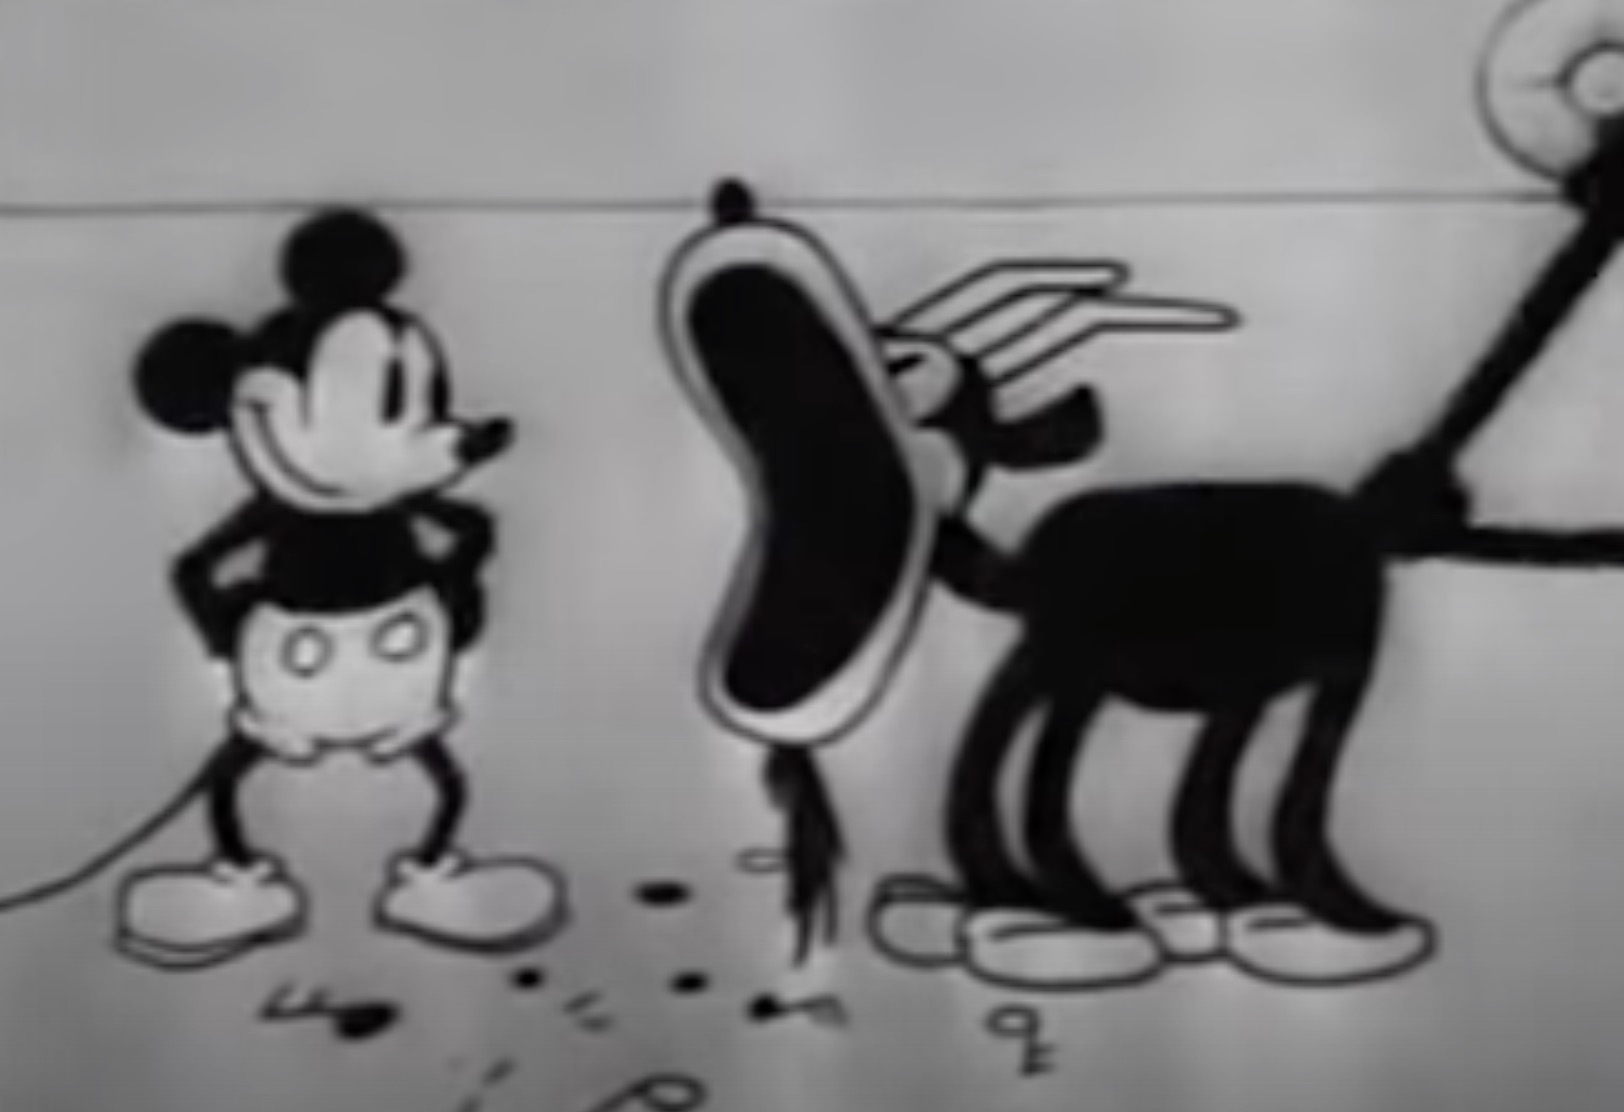 Les marques peuvent-elles utiliser librement le personnage de Mickey dans leur communication ?